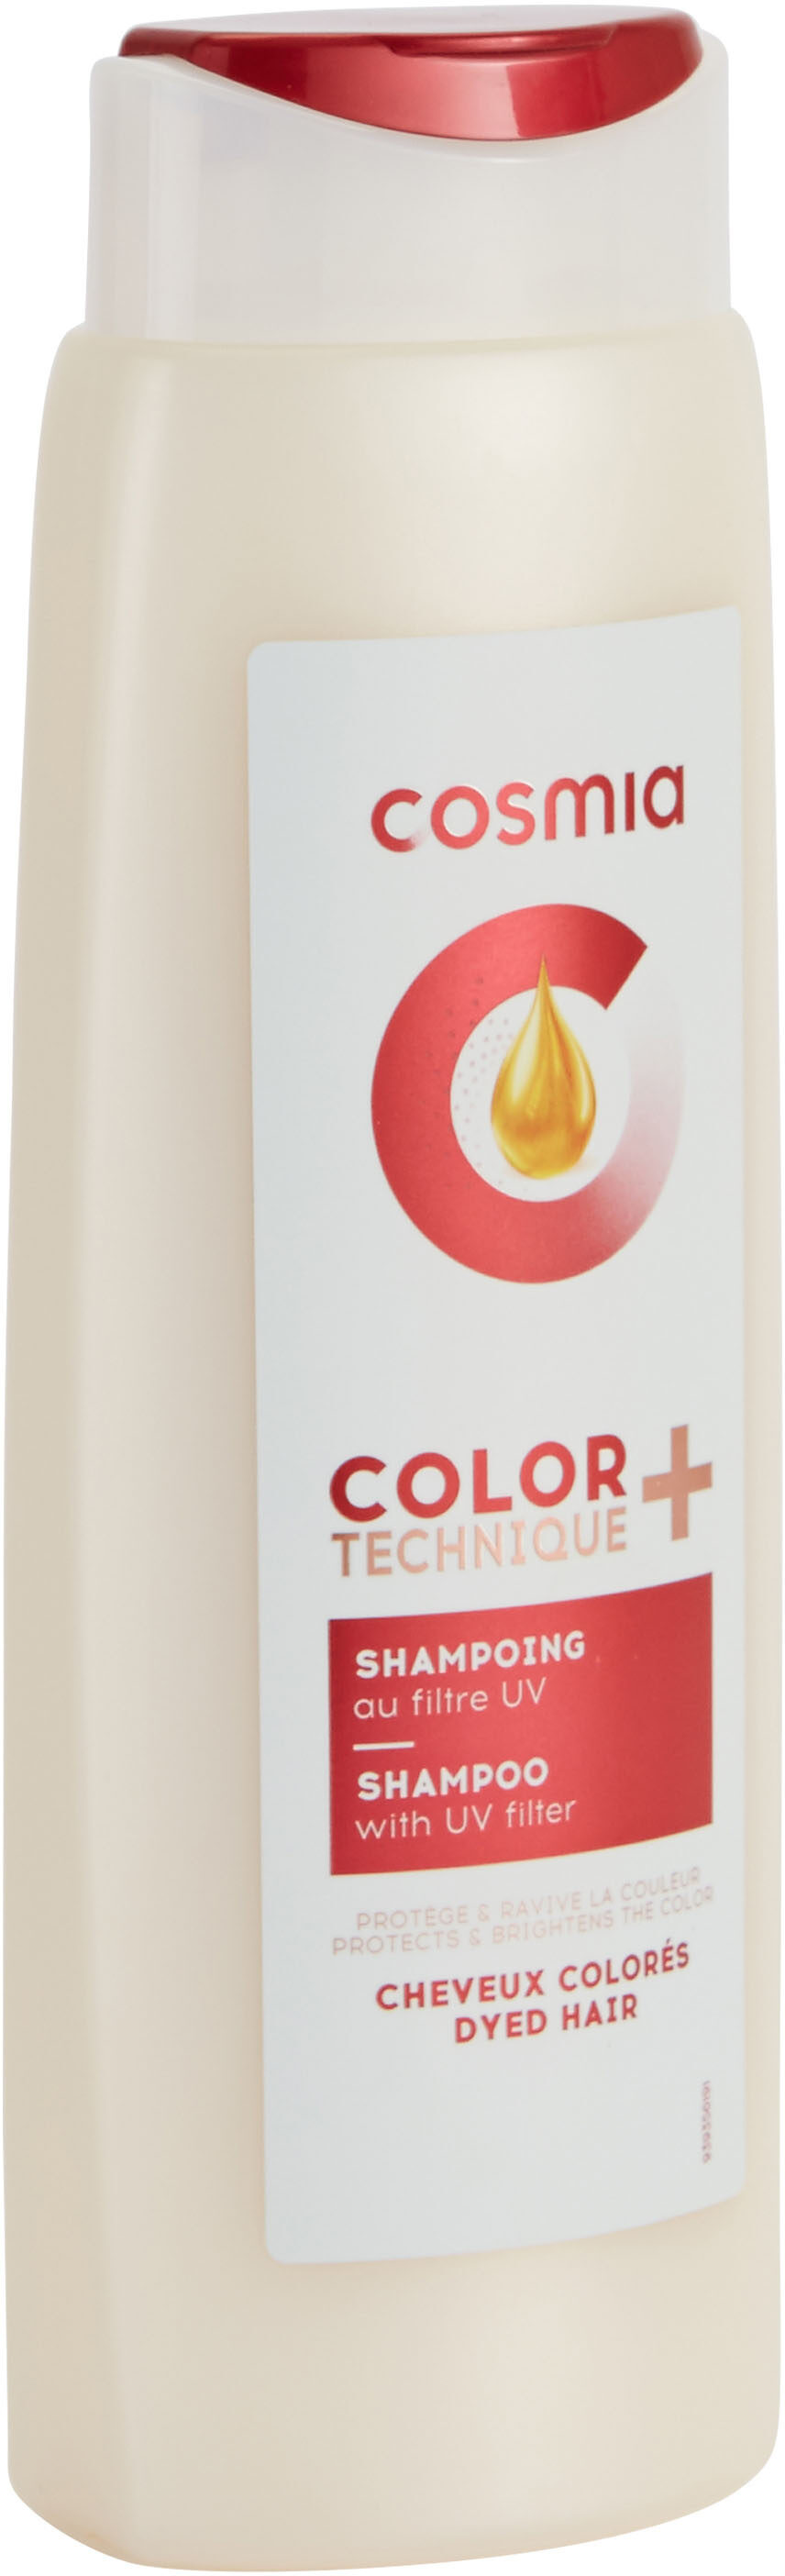 Cosmia - shampoing technique color + /- à l'extrait de grenade et filtre uv - cheveux colorés - 250ml 400ml - Tuote - fr